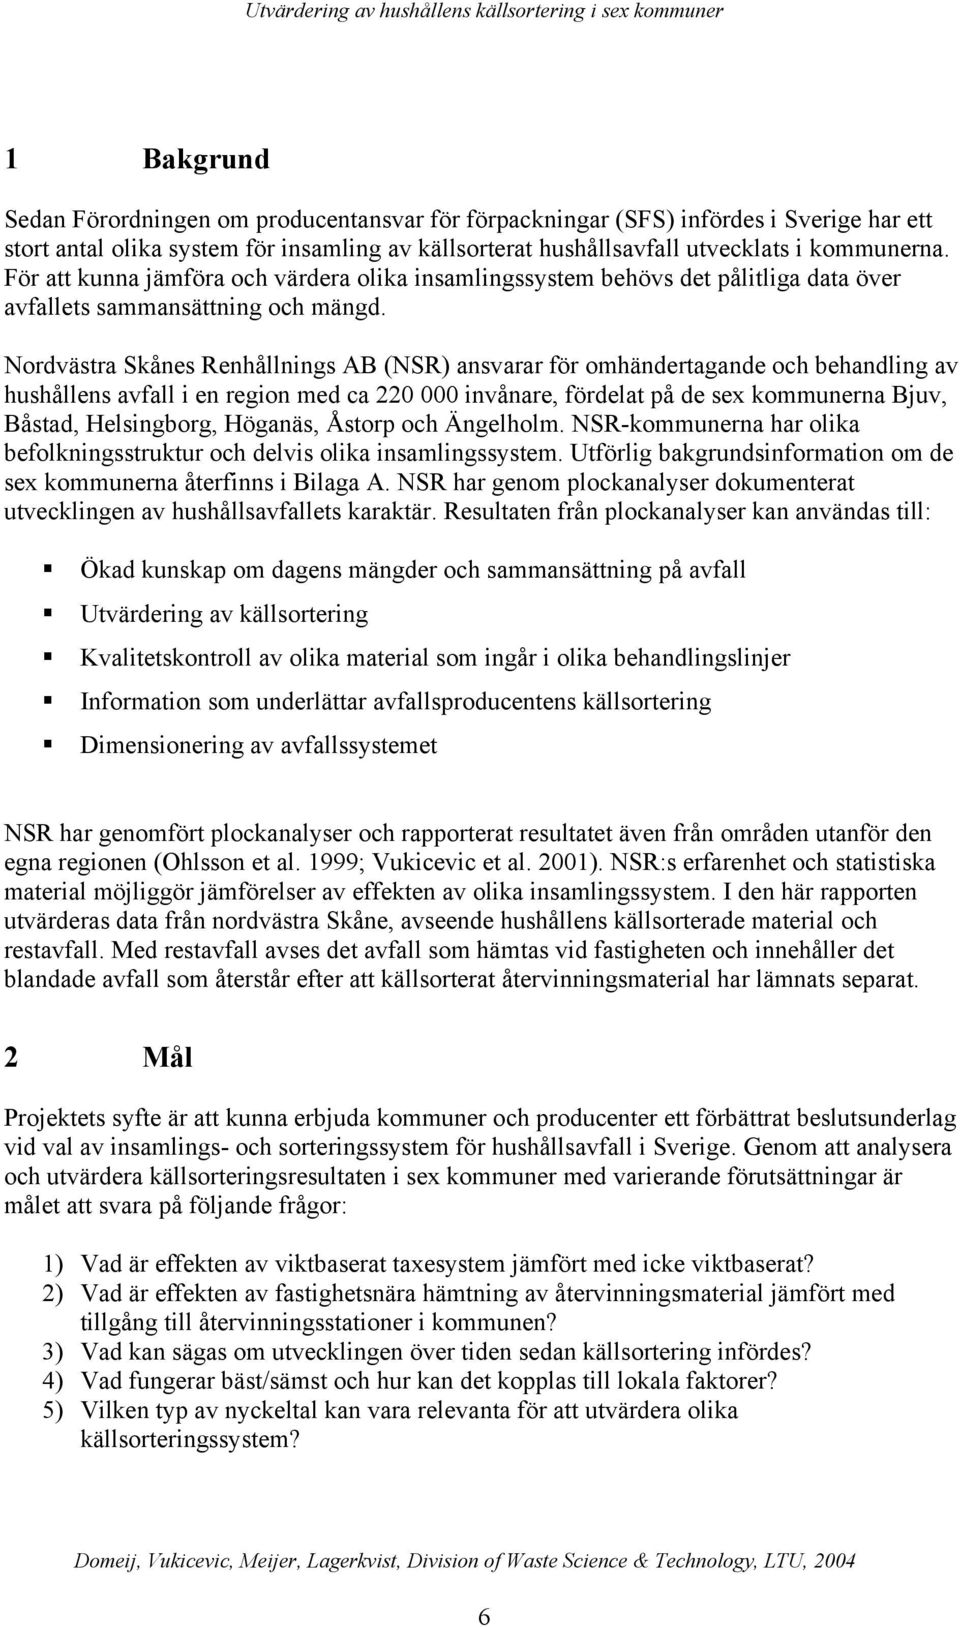 Nordvästra Skånes Renhållnings AB (NSR) ansvarar för omhändertagande och behandling av hushållens avfall i en region med ca 220 000 invånare, fördelat på de sex kommunerna Bjuv, Båstad, Helsingborg,